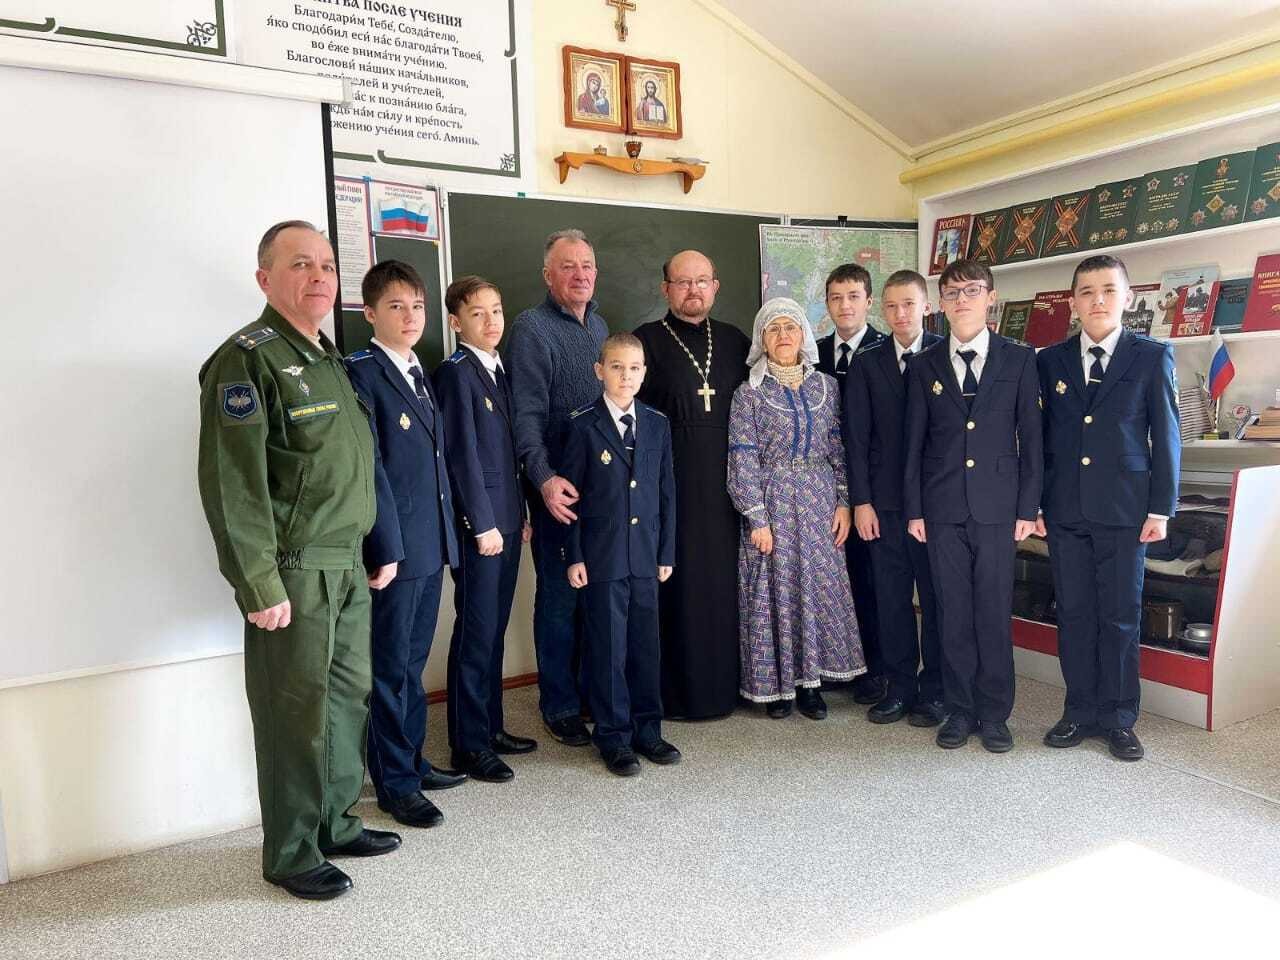 Священник посетил занятия военно-патриотического клуба в ЗАТО г. Фокино.